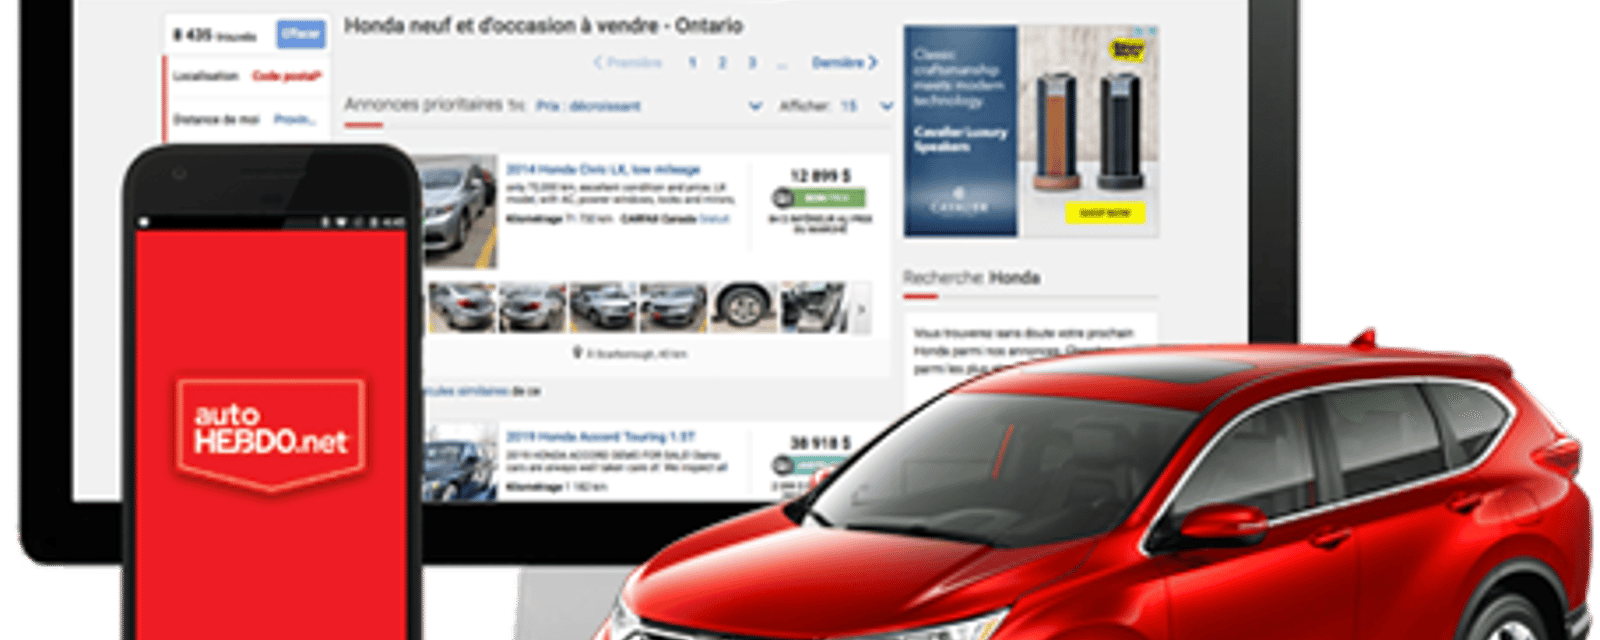 AutoHebdo est à la recherche de Québécois pour une publicité vous payant près de 3000$ 